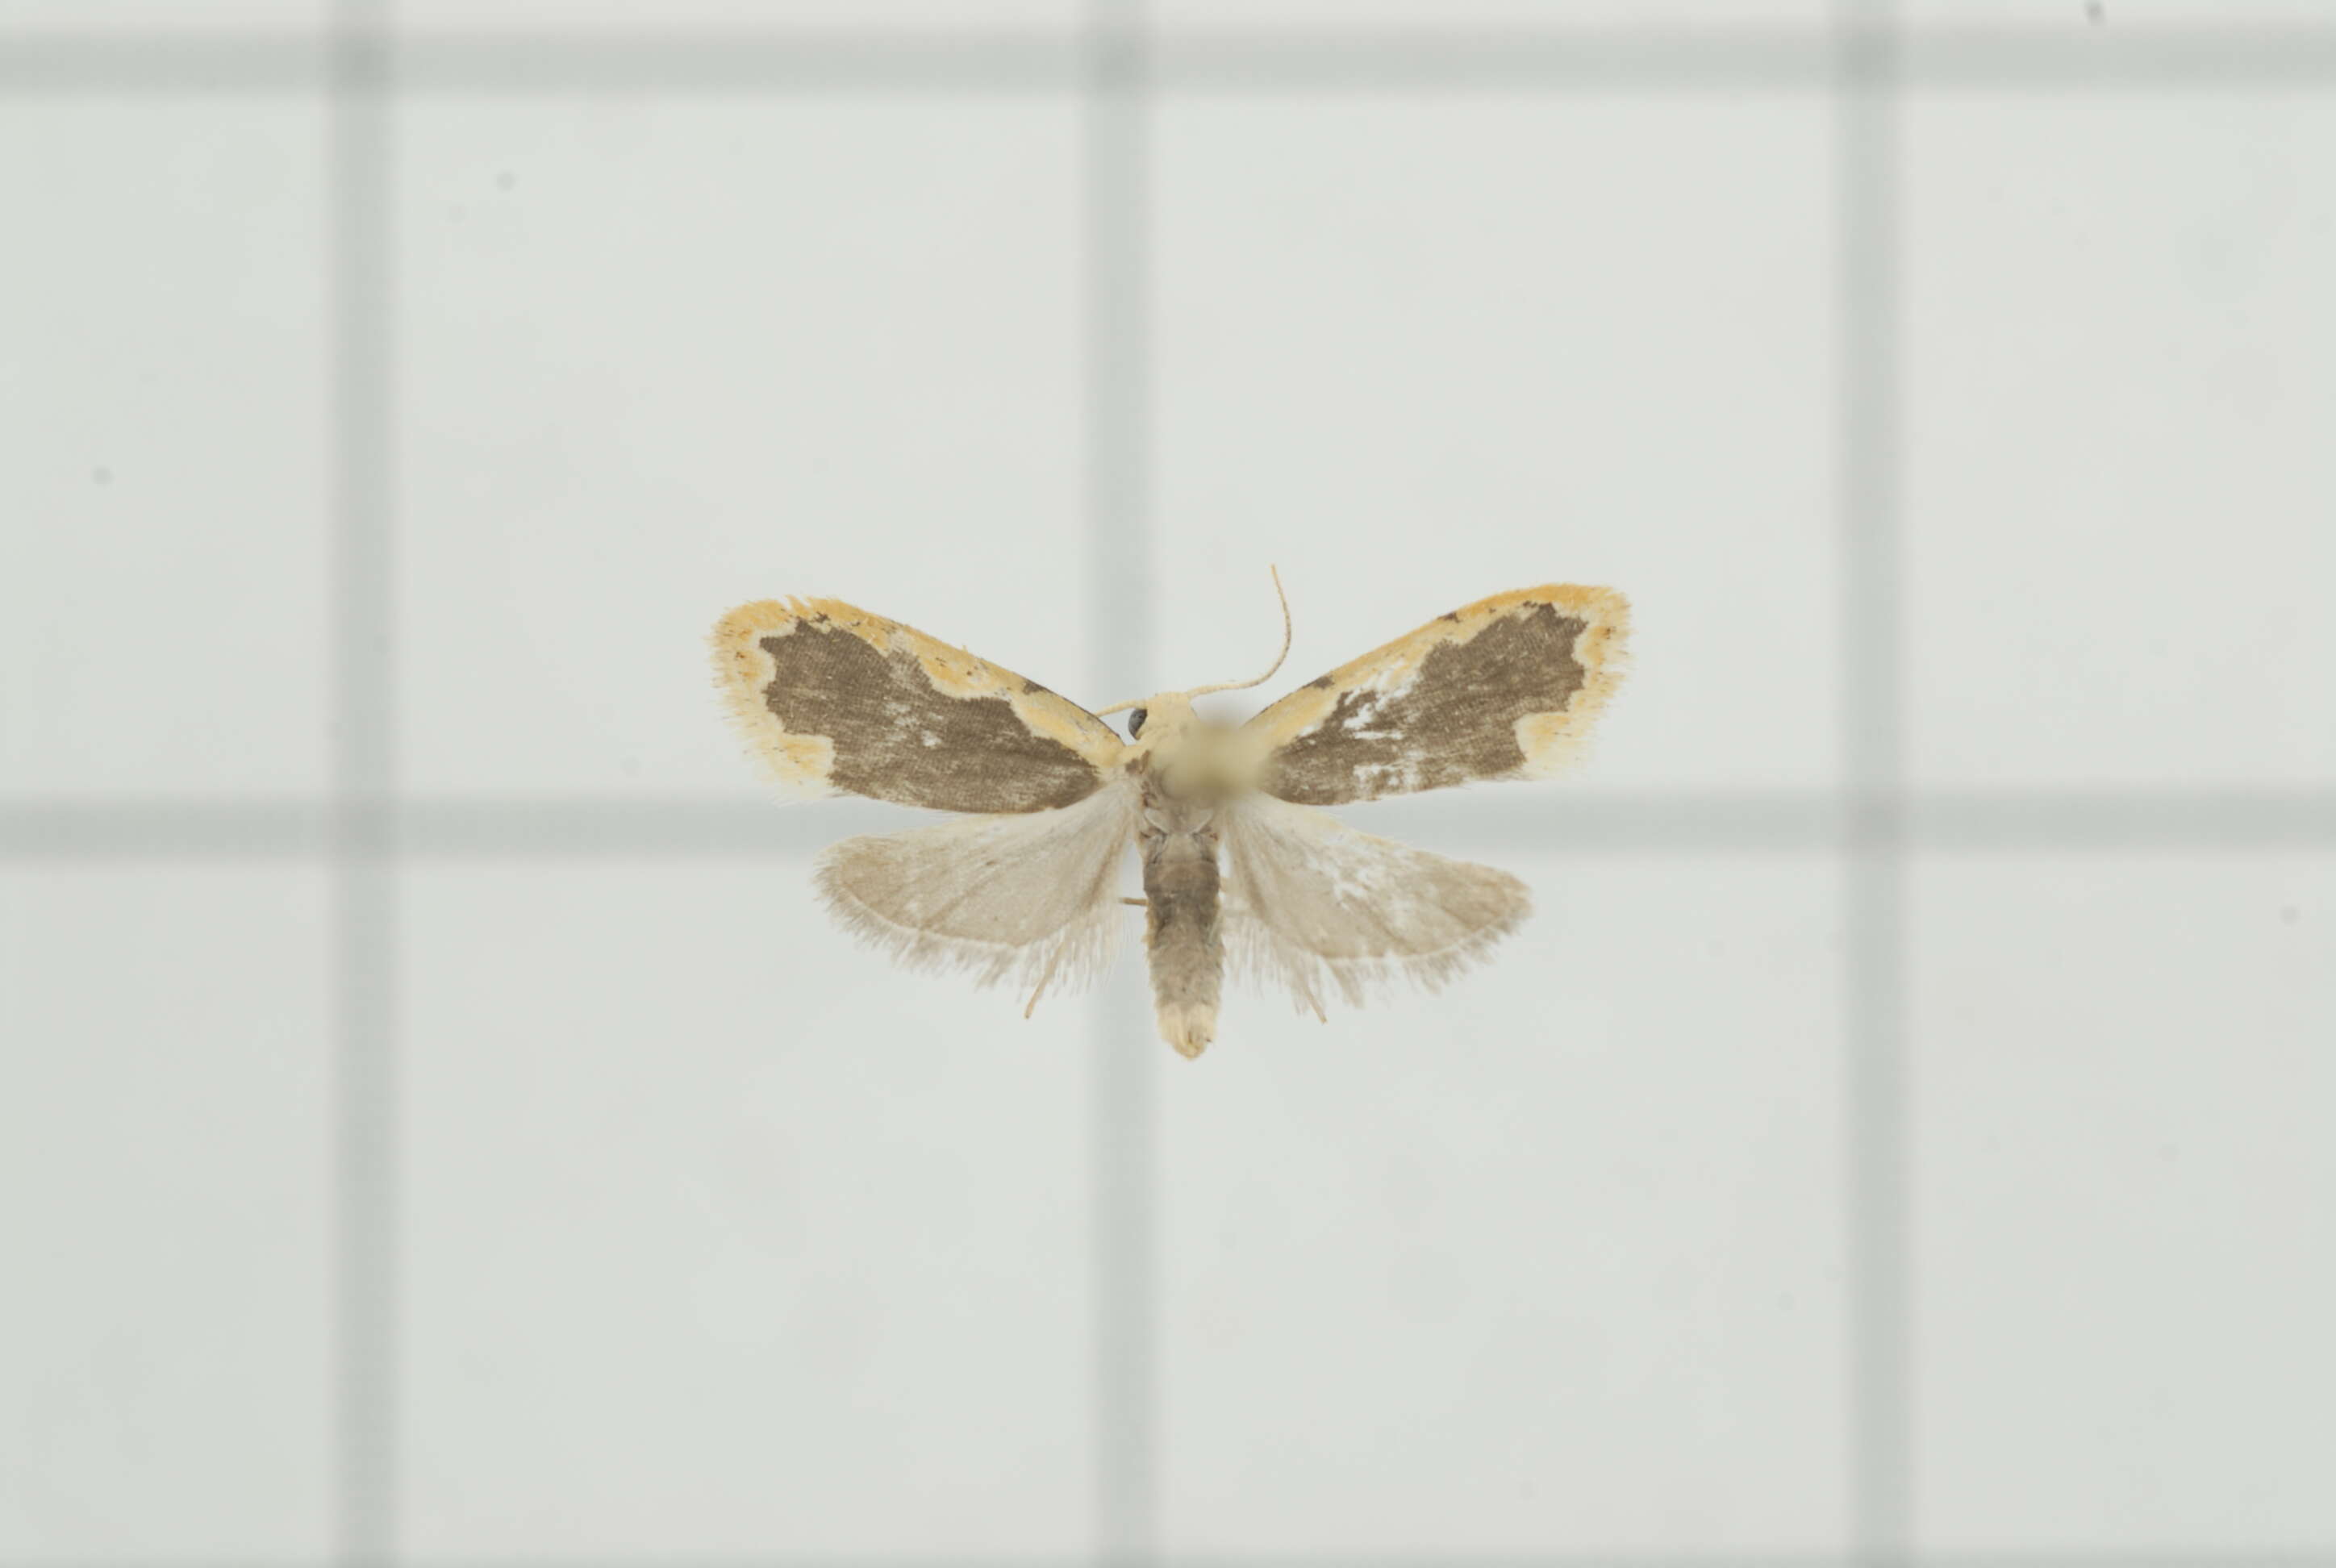 Image of Diduga flavicostata Snellen 1879